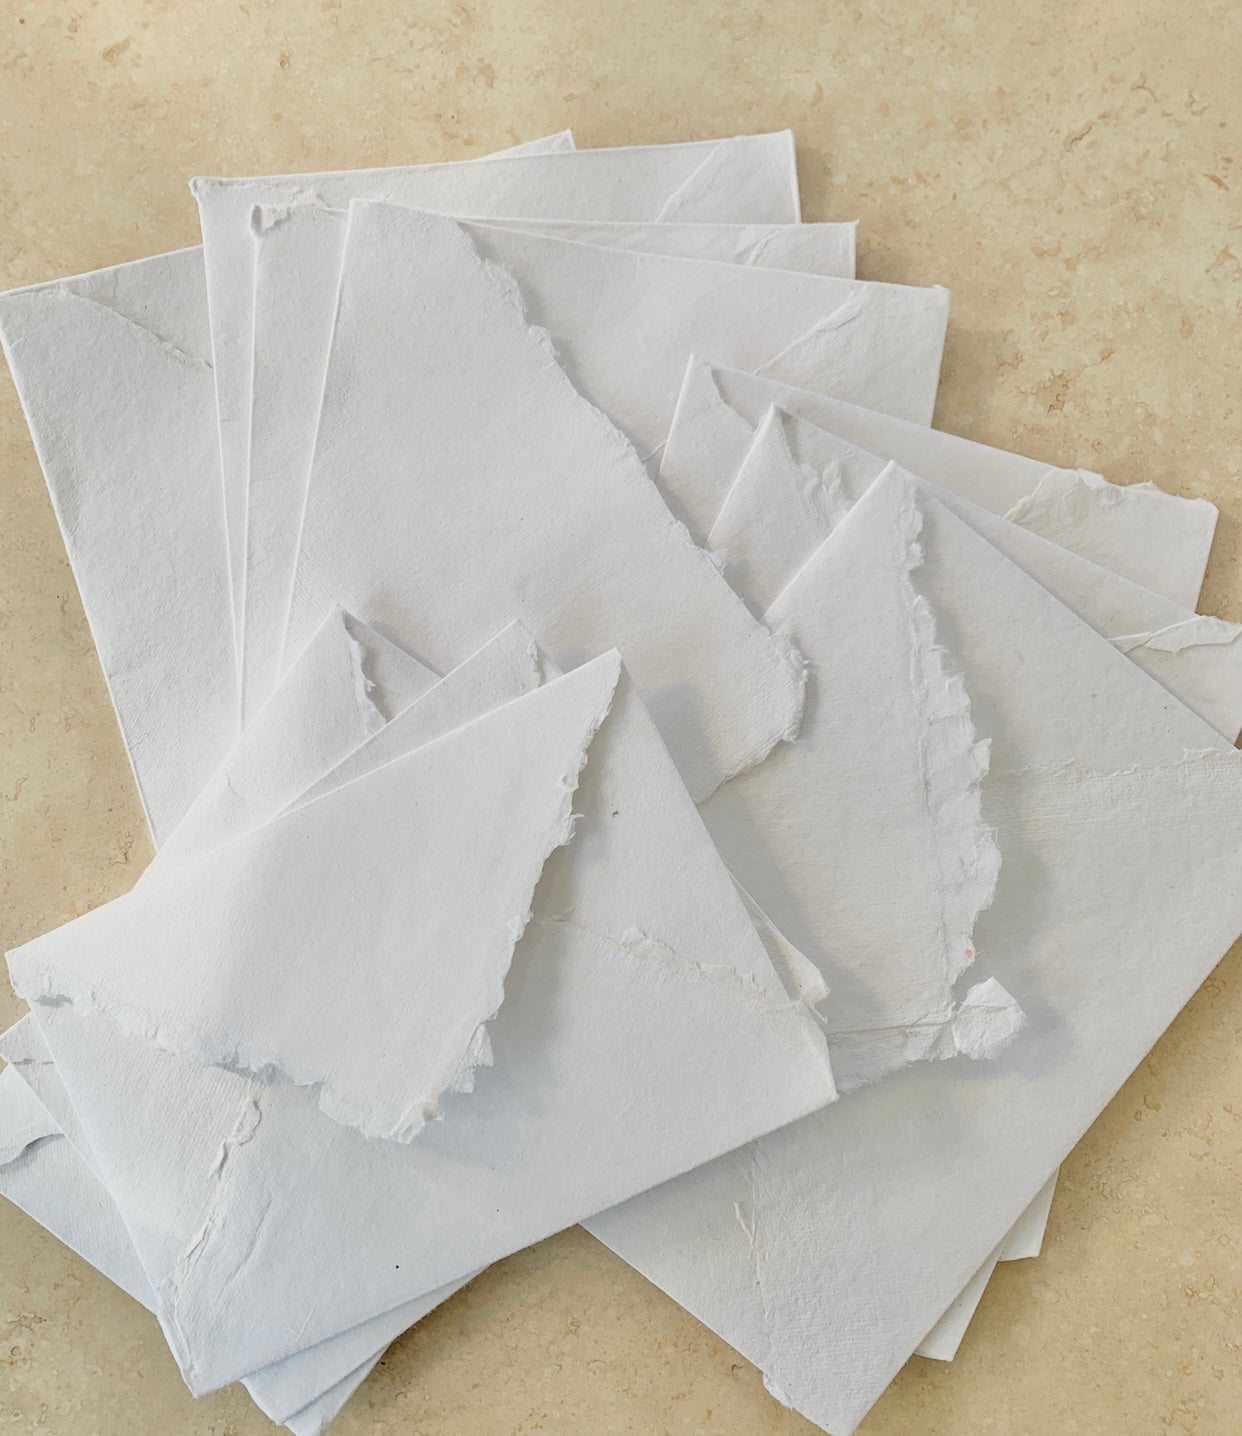 Discontinued - BLEMISHED Cotton rag envelopes